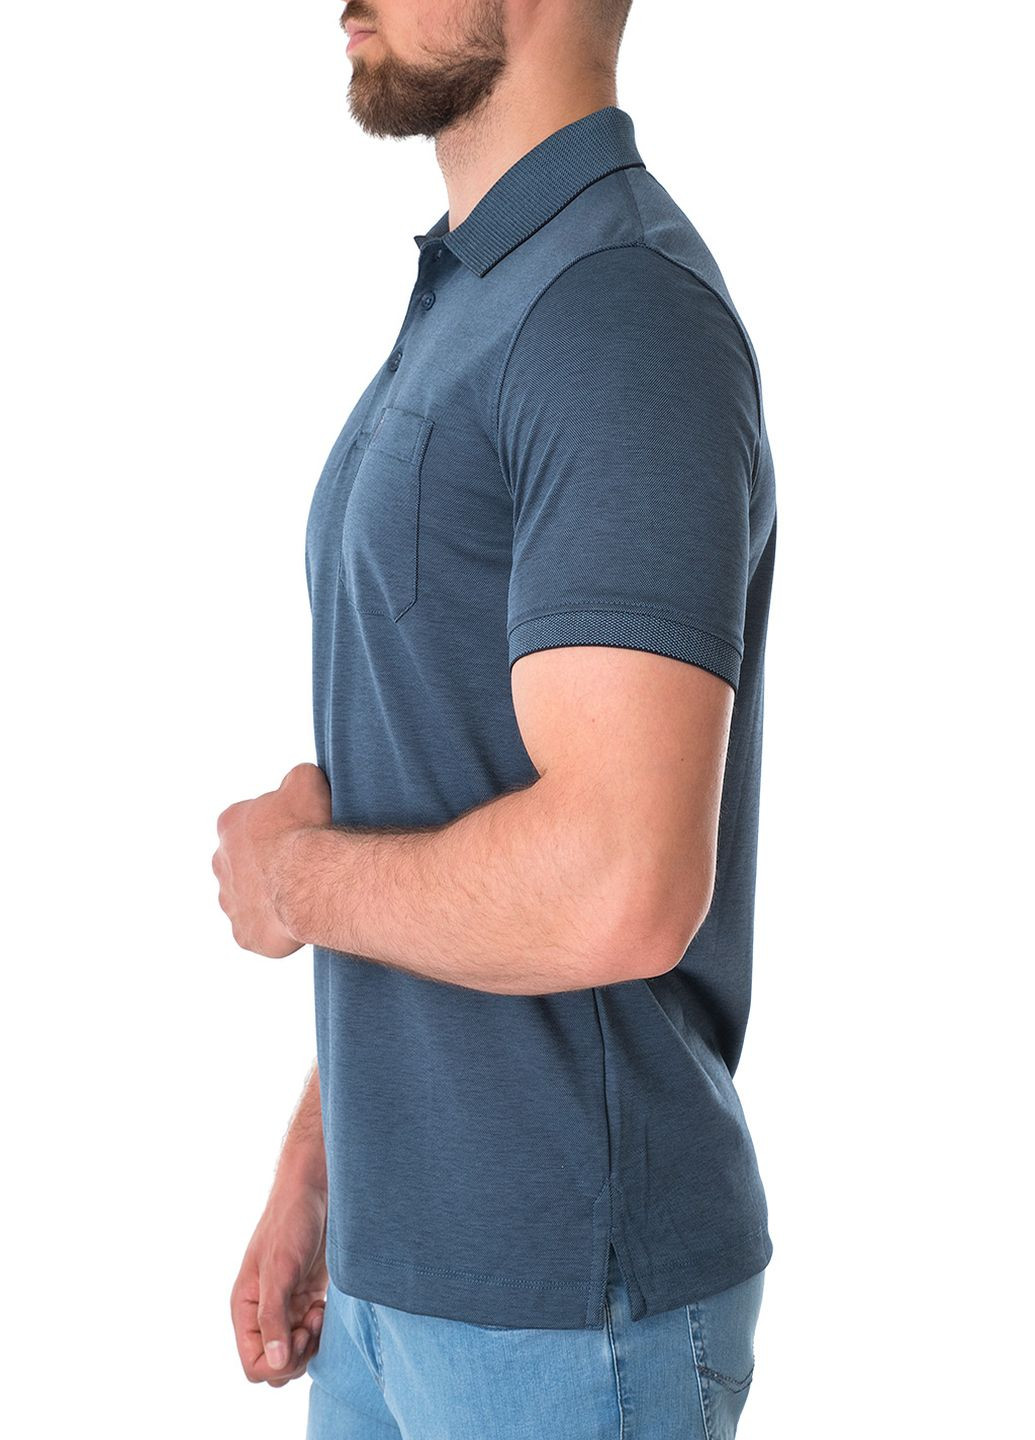 Синяя футболка-поло для мужчин Basefield однотонная